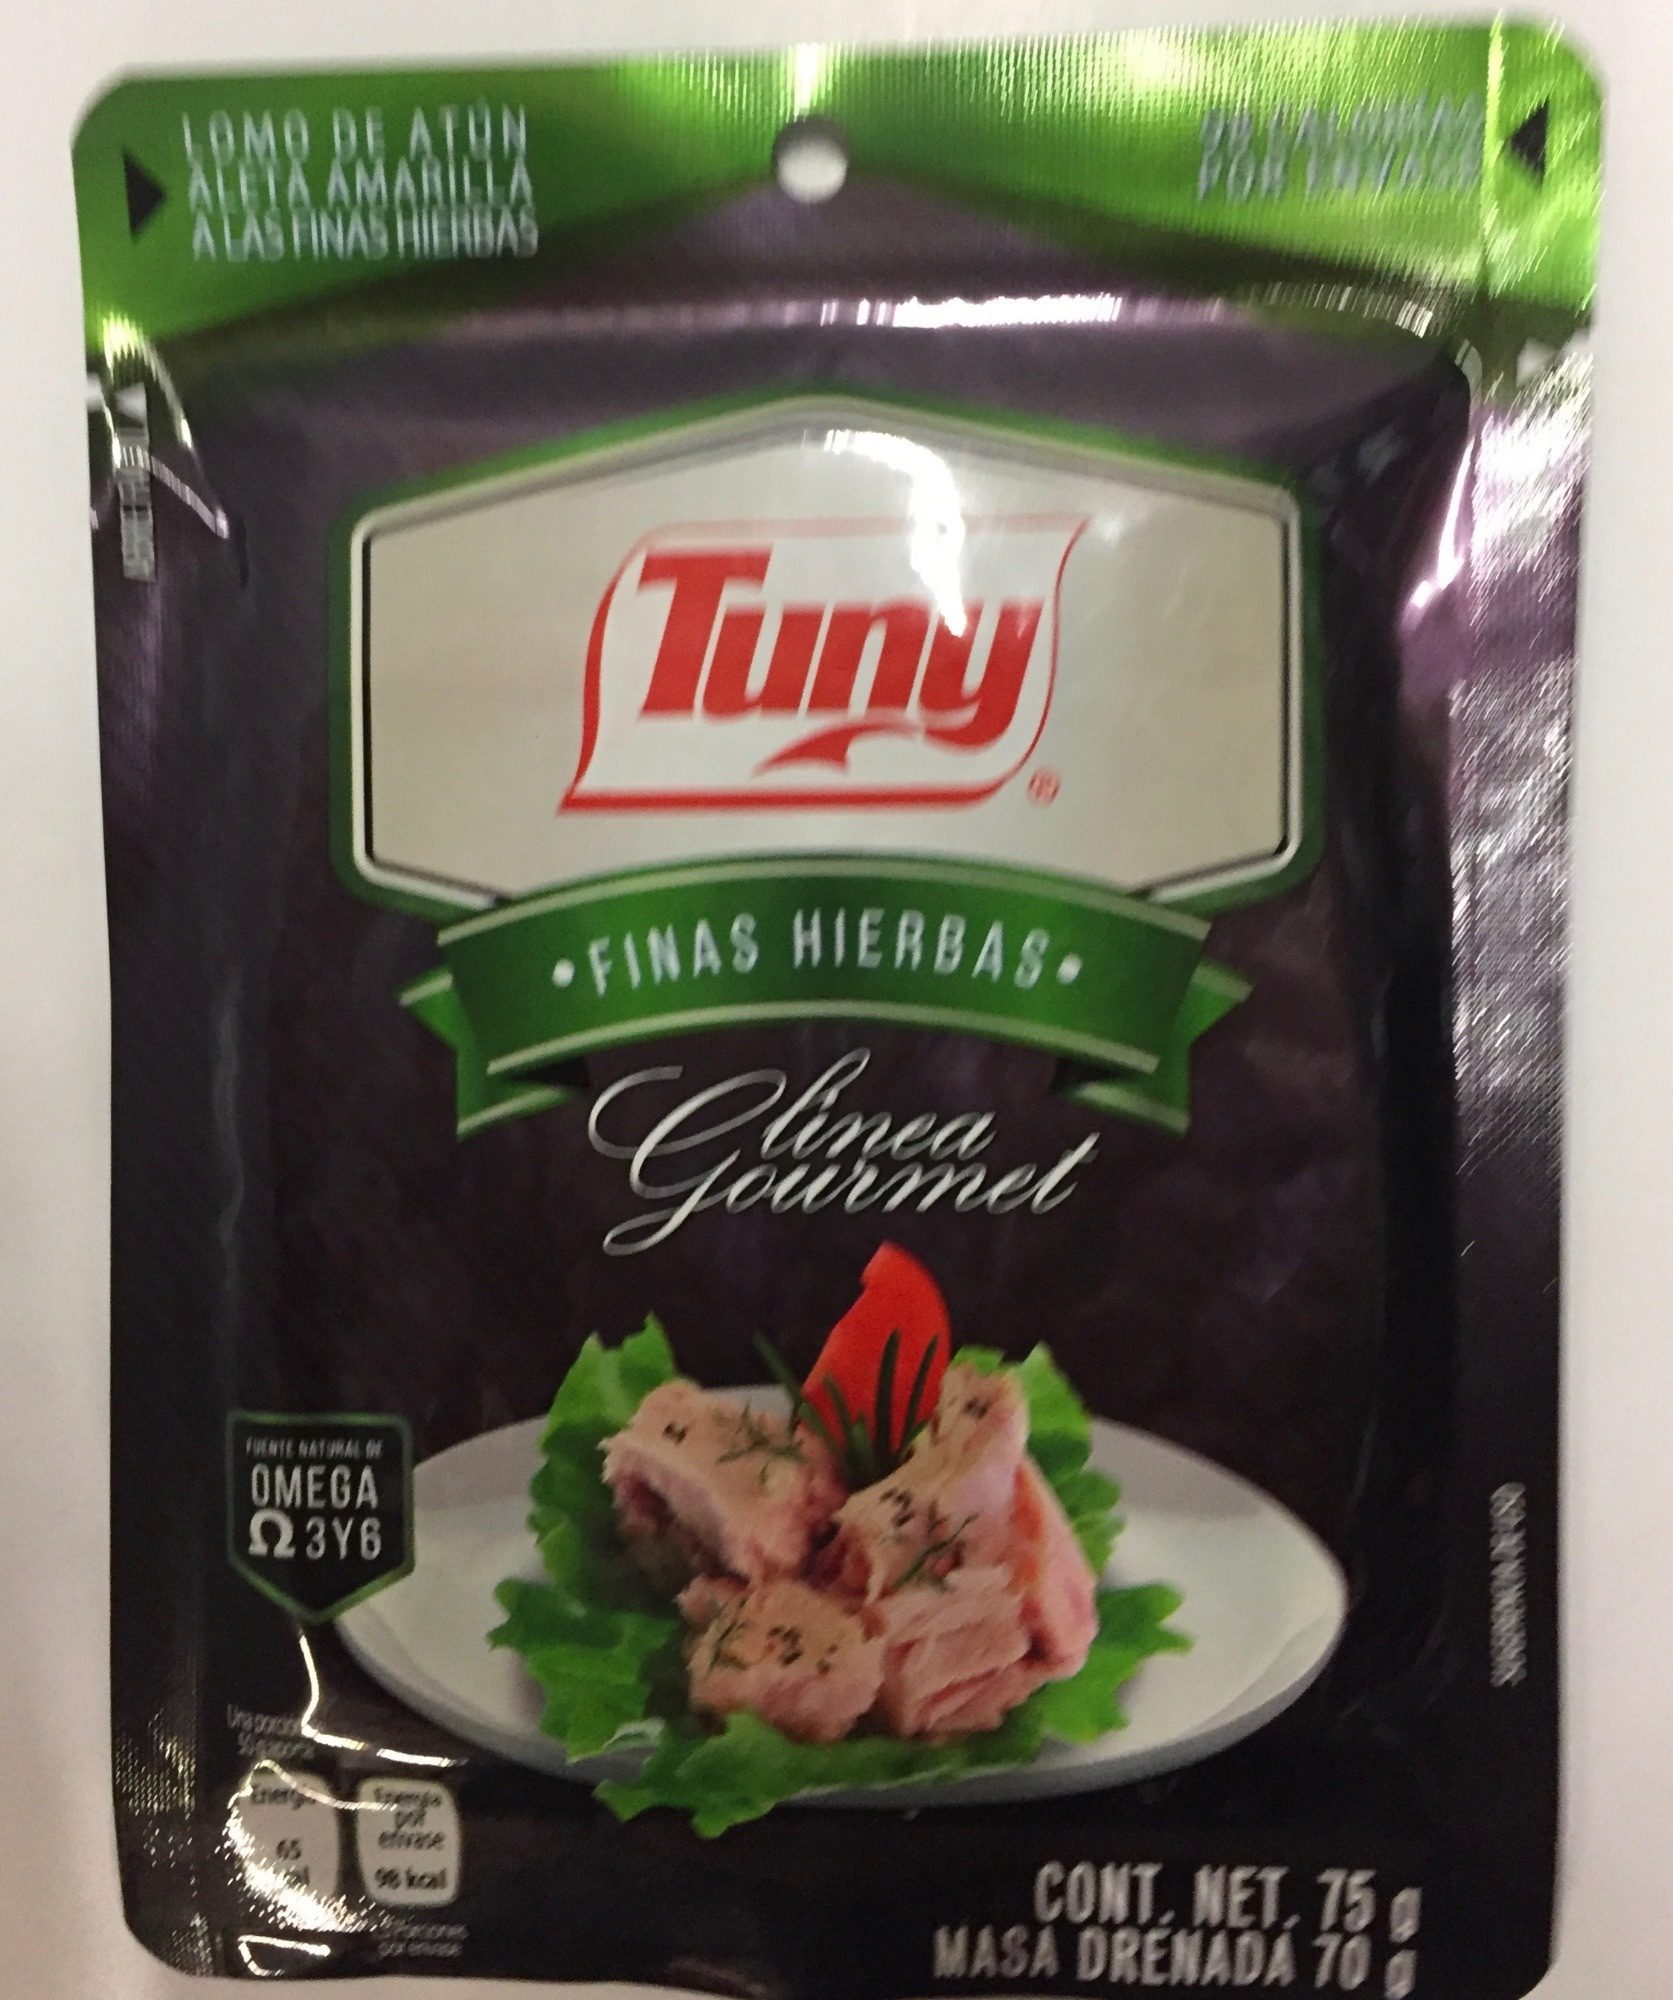 Tuny Finas Hierbas Linea Gourmet - Producto